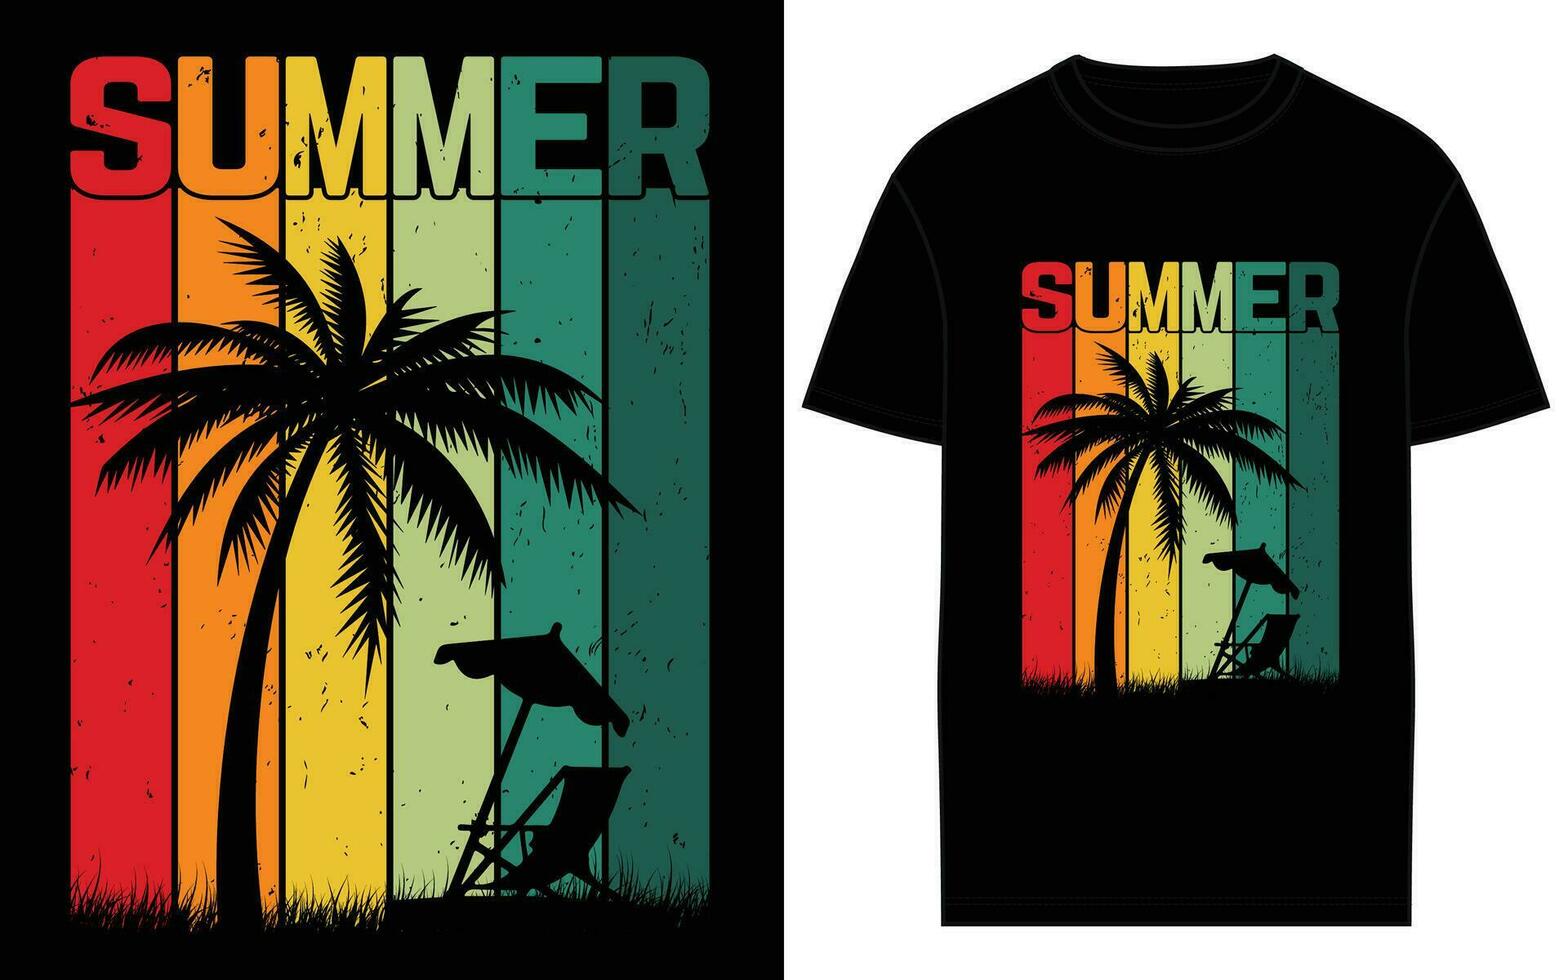 vector zomer creatief t-shirt ontwerpen voor de het beste surfing avonturen.